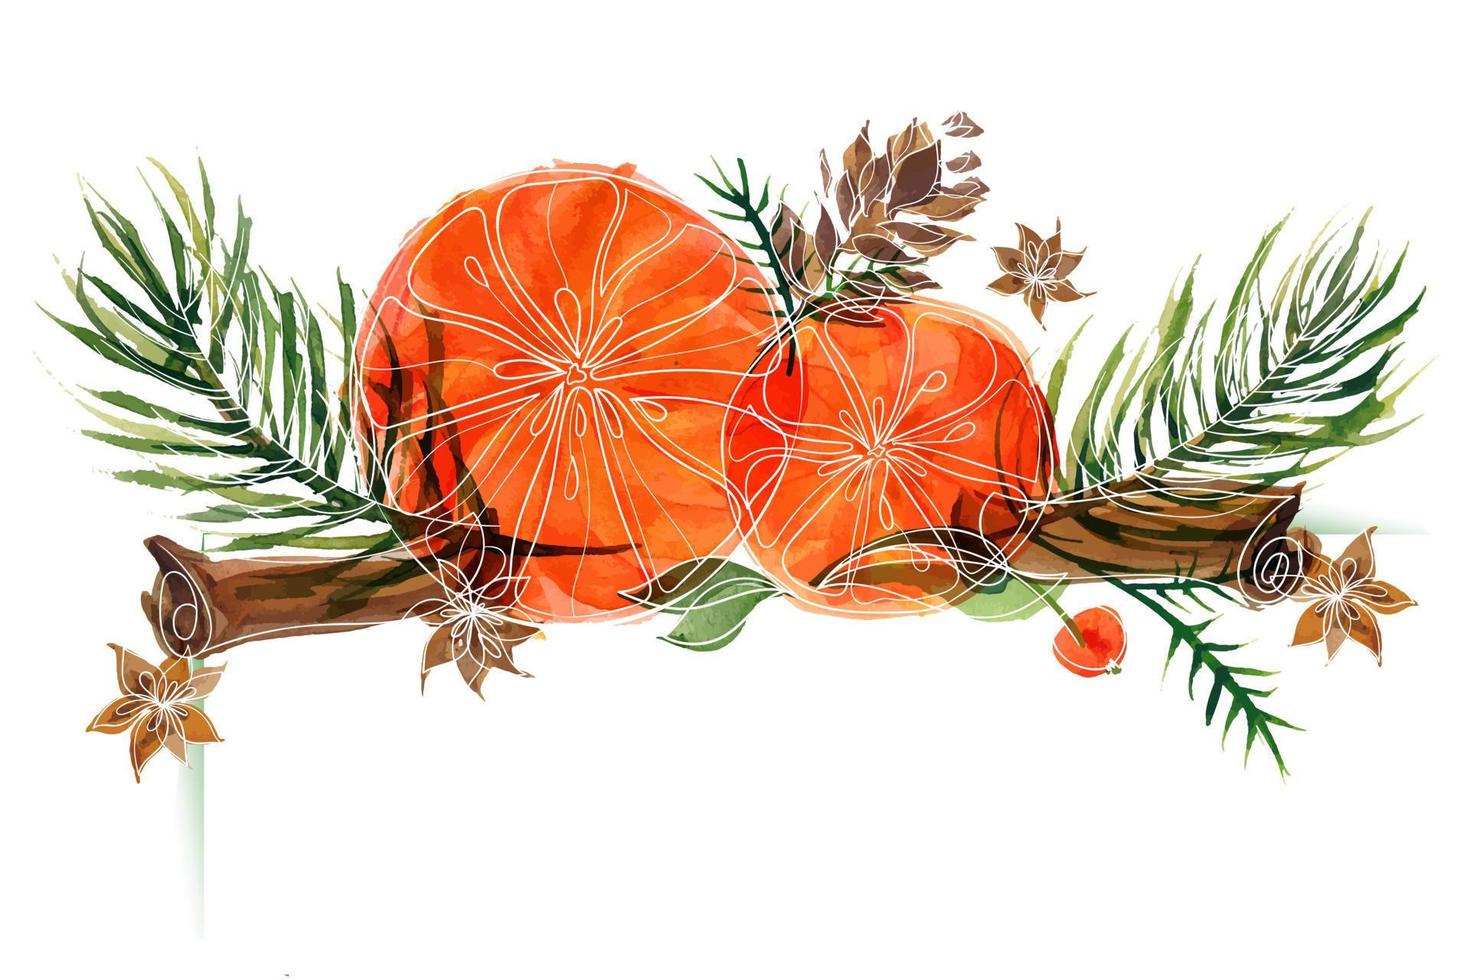 jul blommig vinjett med ale grenar och apelsiner och kanel och anis. dekorvinjett för söta jul- och nyårshälsningar och inbjudningar vektor